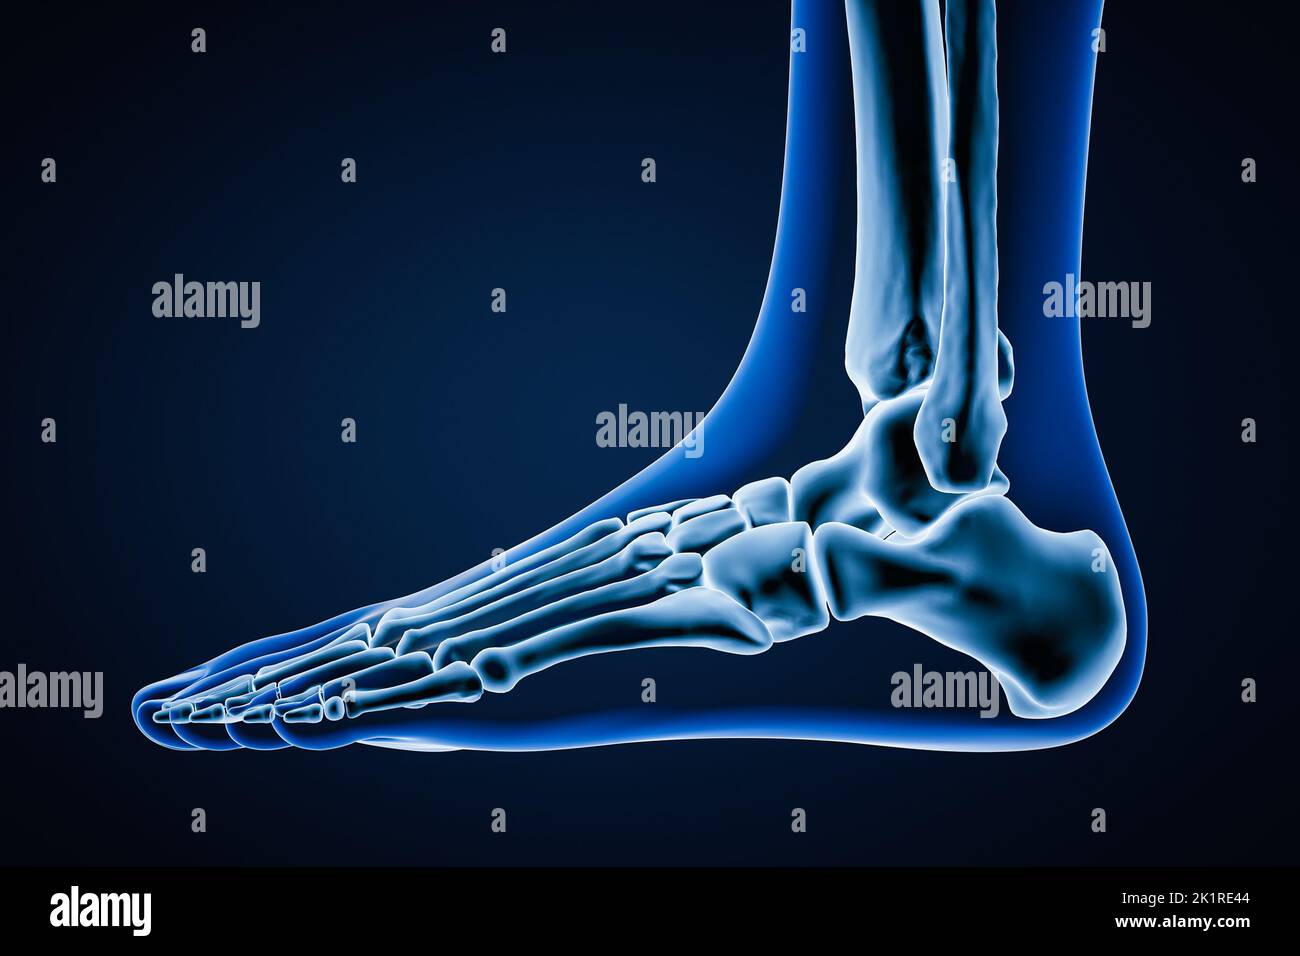 Laterale oder Profilansicht von präzisen menschlichen linken Fußknochen mit Körperkonturen auf blauem Hintergrund 3D Rendering Illustration. Anatomie, Osteologie, Orthopädie Stockfoto